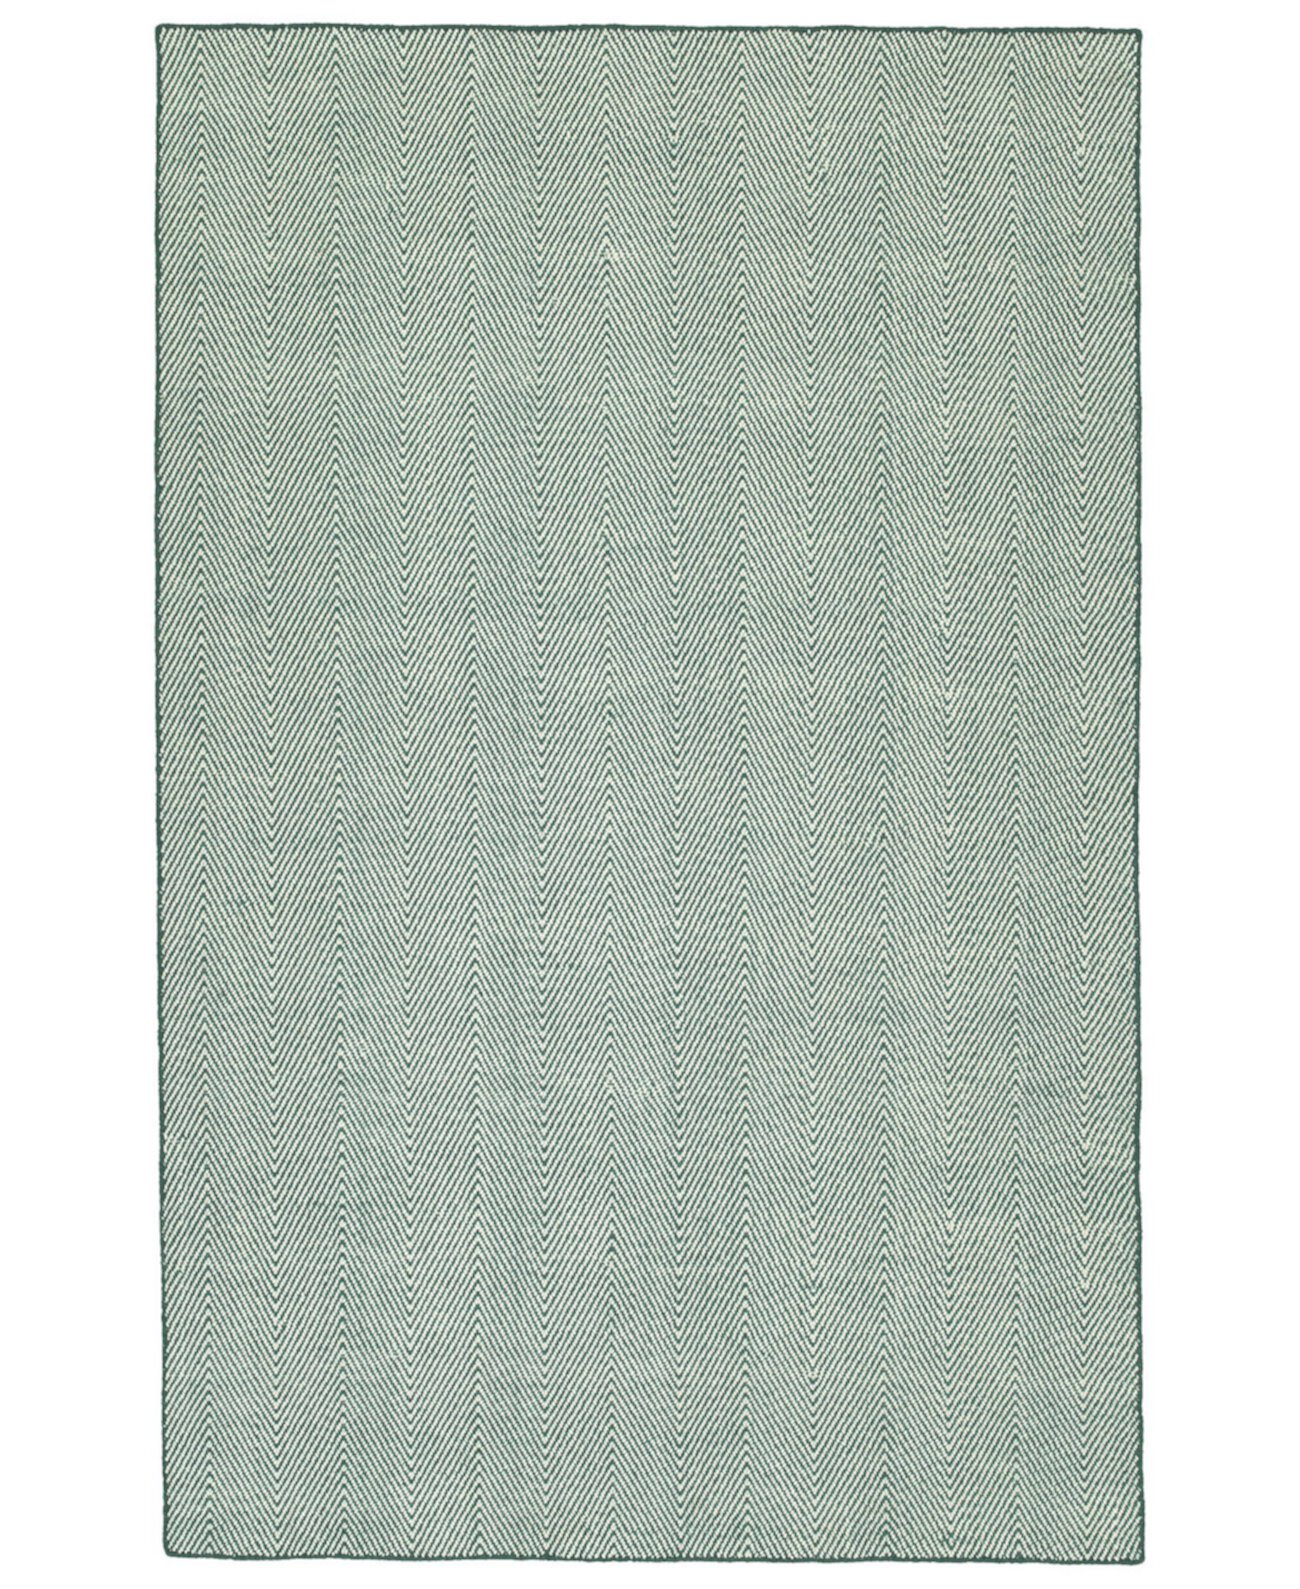 Ziggy ZIG01-91 Бирюзовый коврик размером 2 x 3 фута для улицы Kaleen